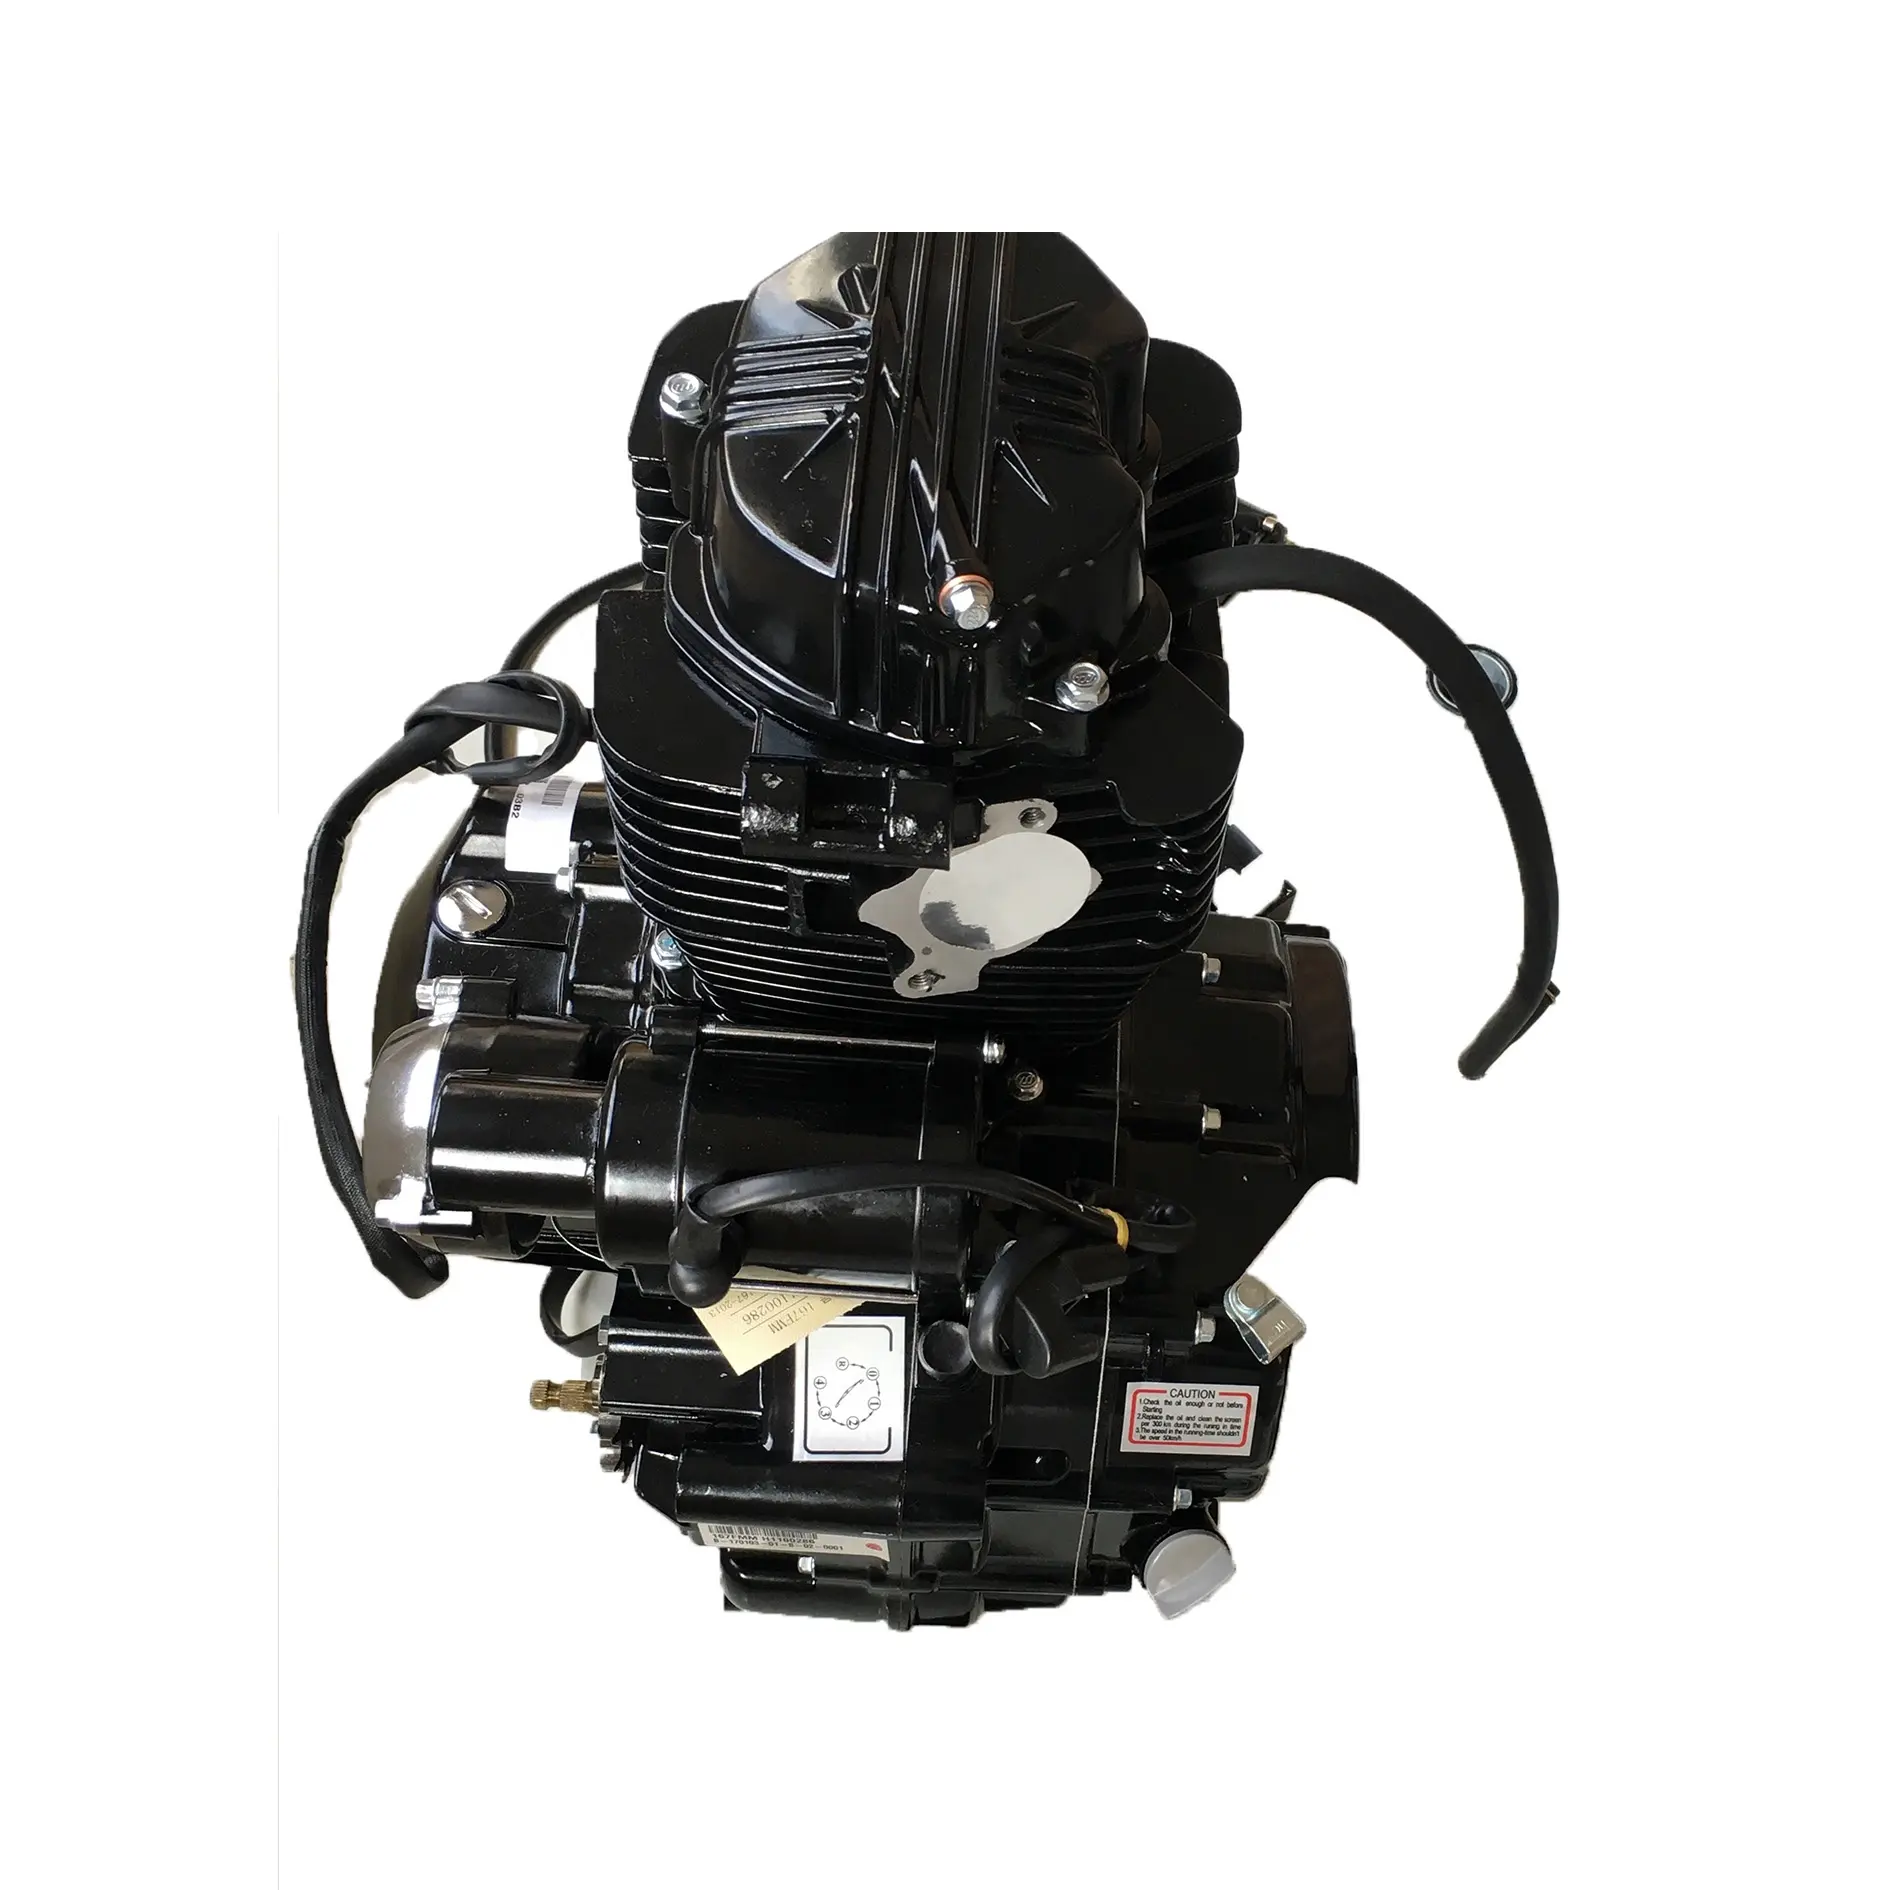 ダートバイクAtvクワッドモーターサイクルエンジン用電動スタート付き167mm Lifanブランド250ccエンジン